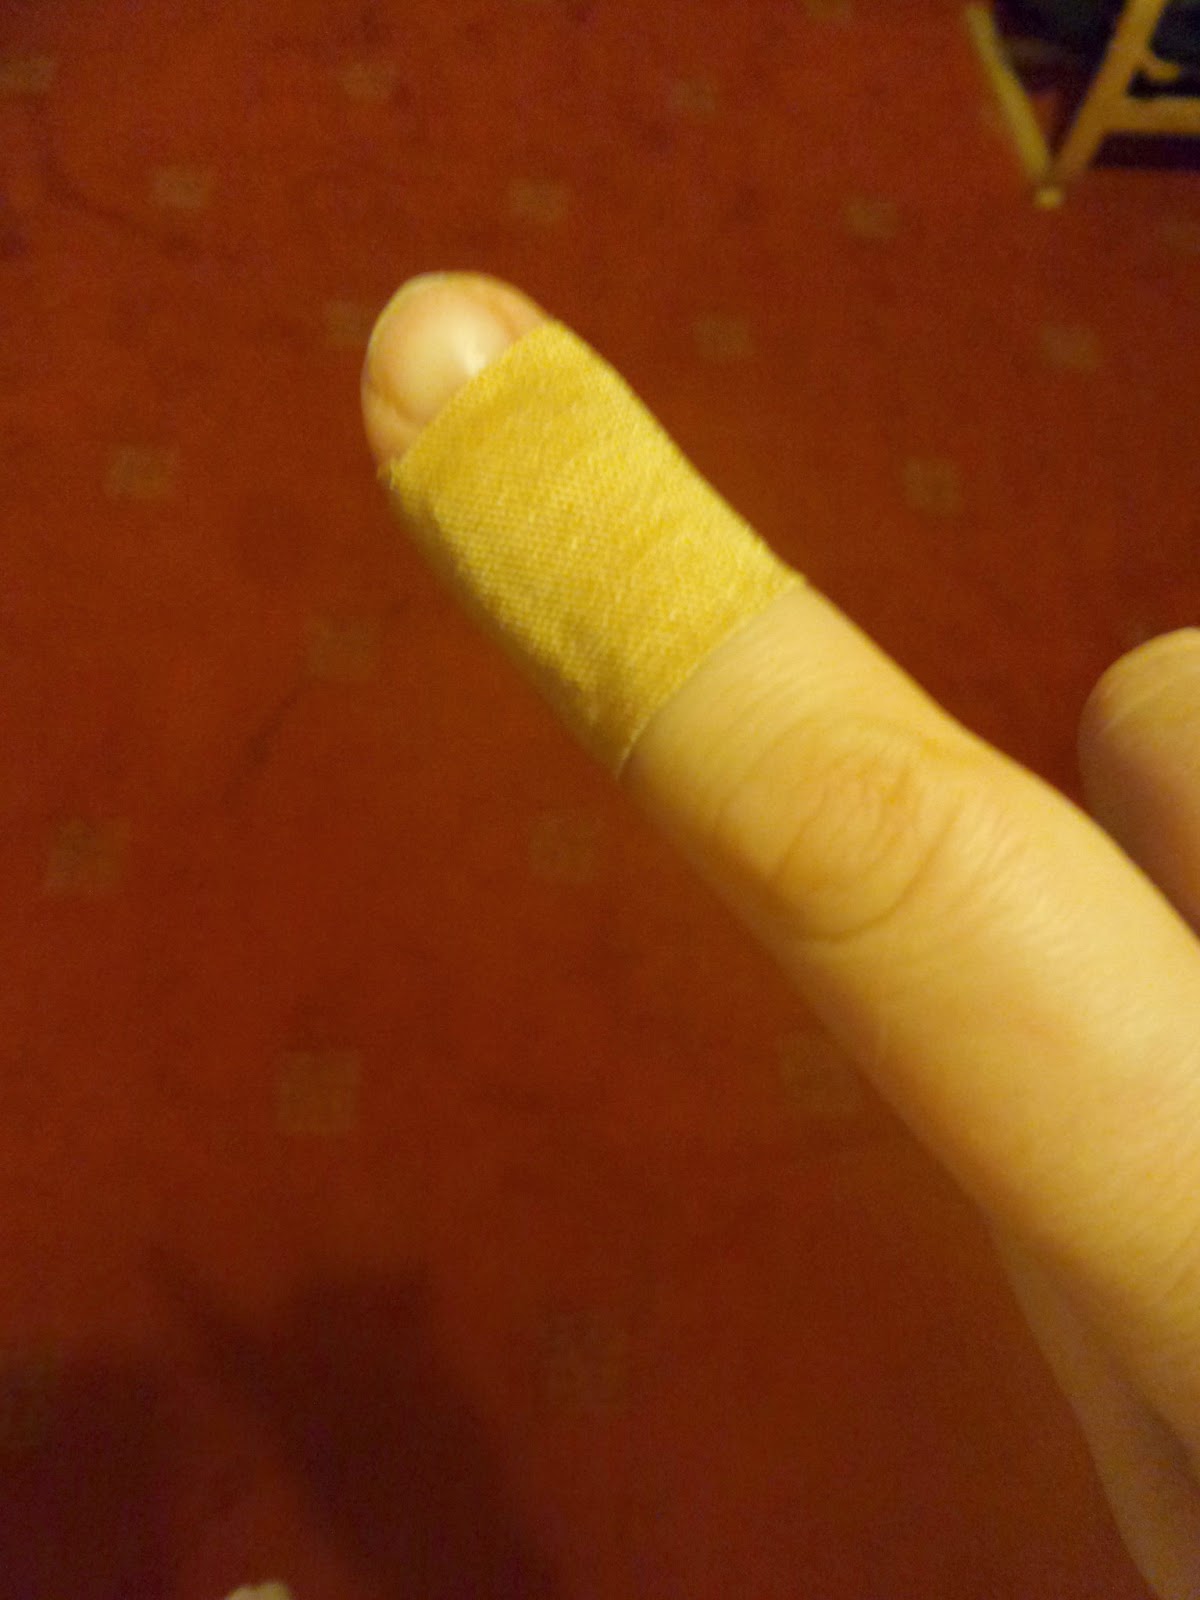 Pippa's Cut Finger - Again!